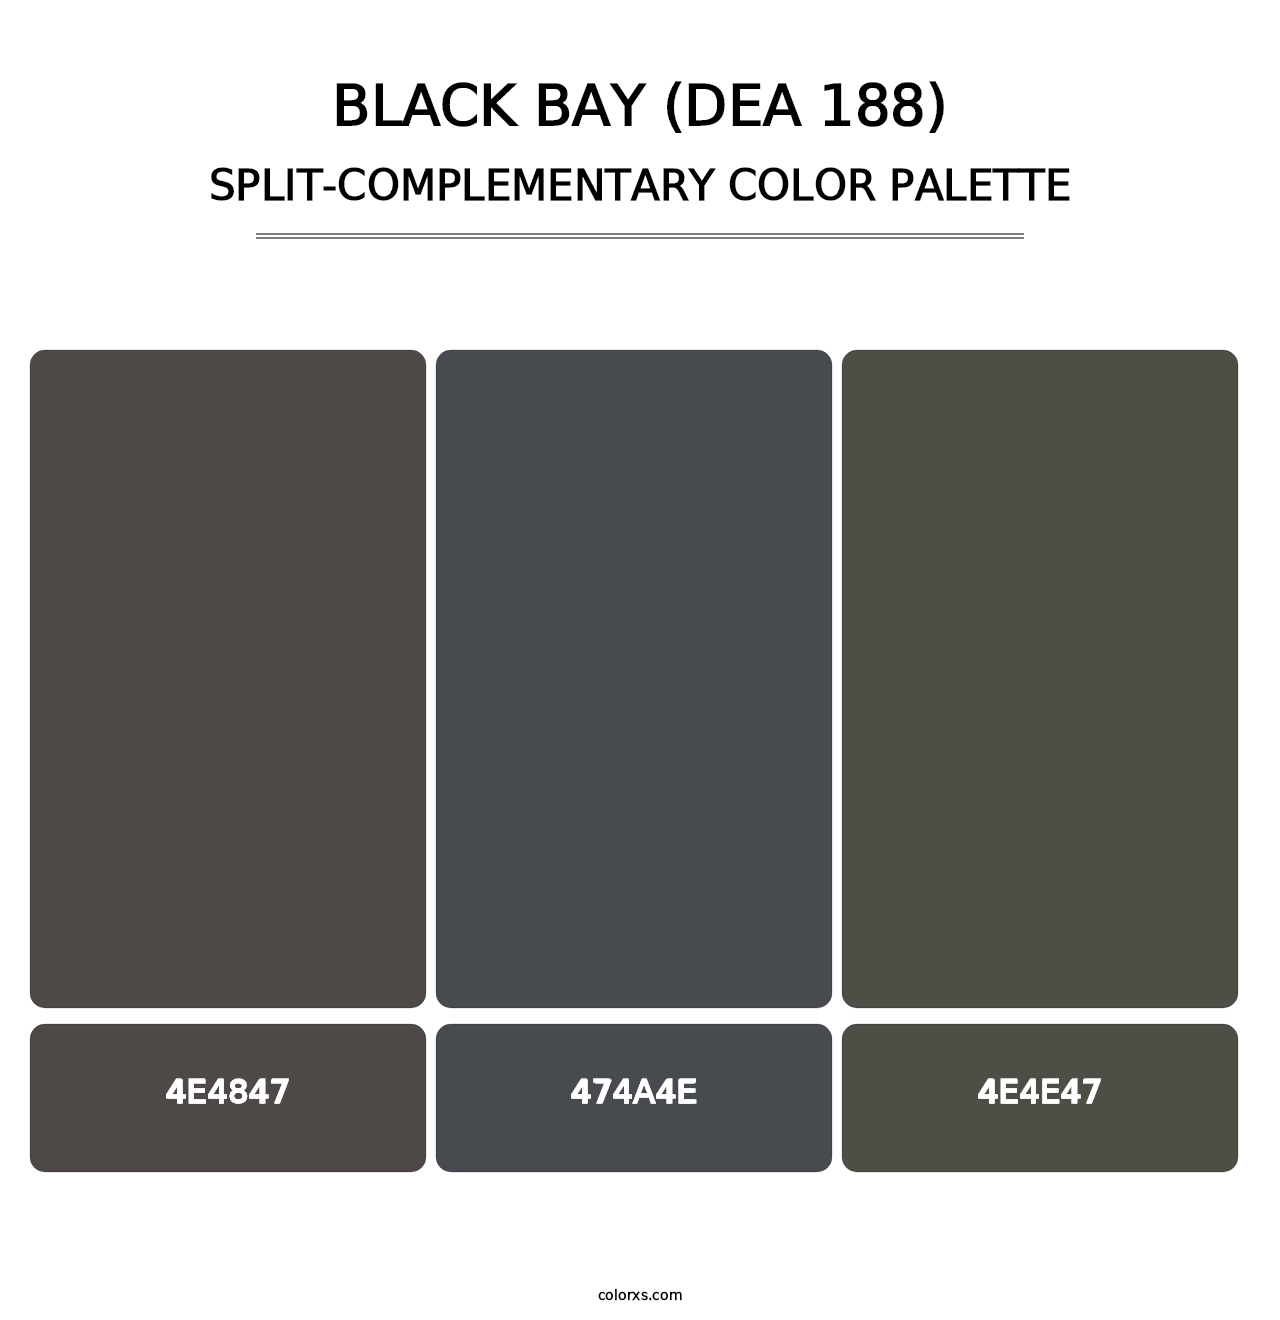 Black Bay (DEA 188) - Split-Complementary Color Palette